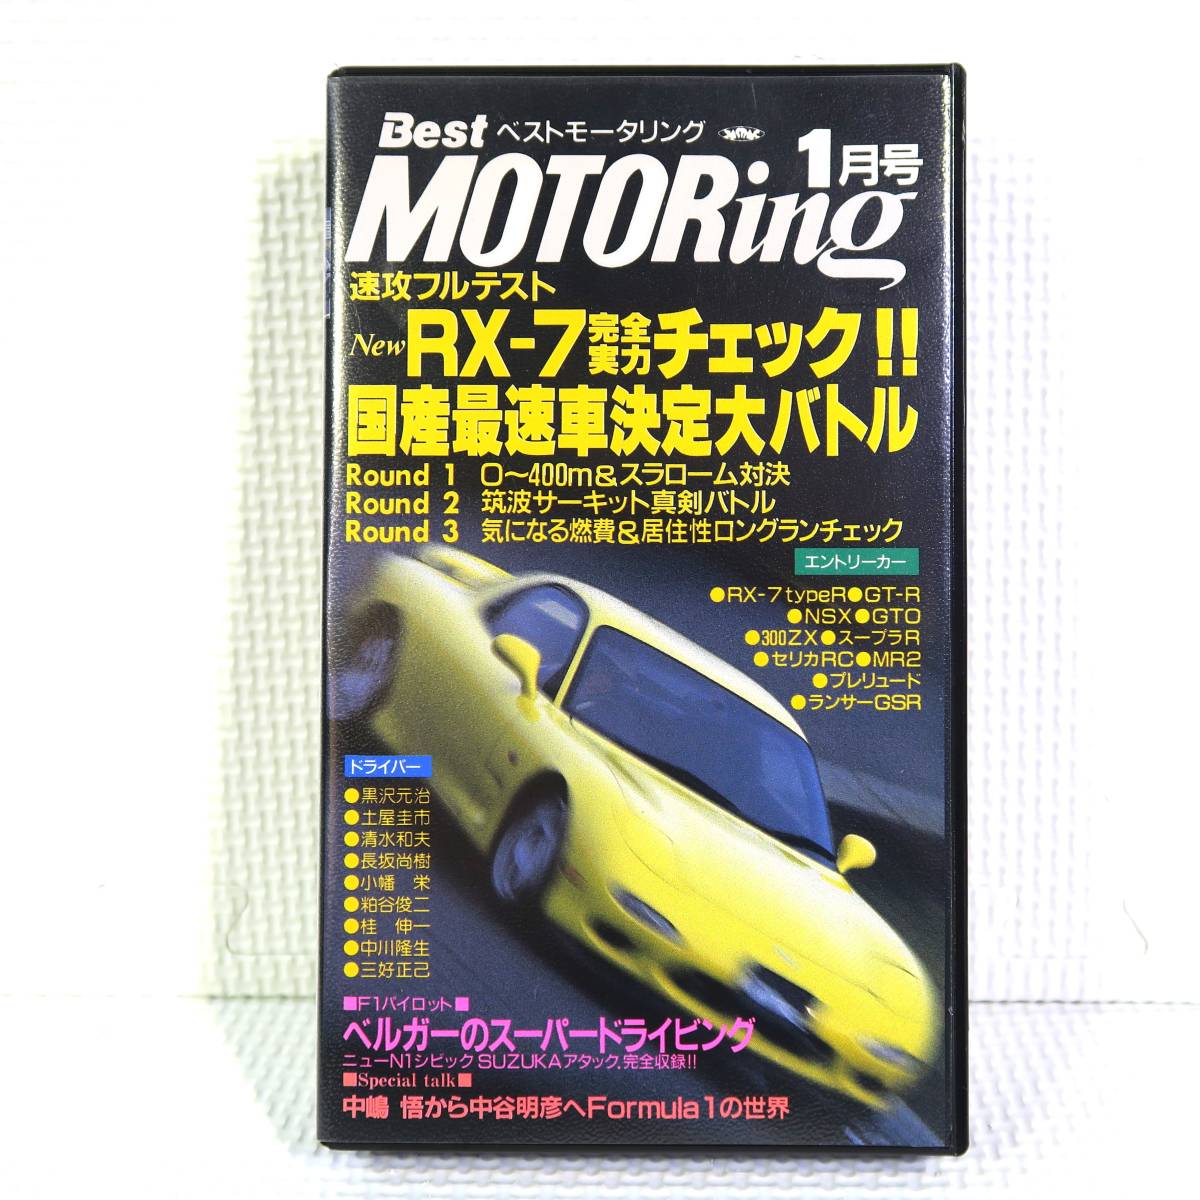 Best MOTORing Best Motoring 1 месяц номер 1992.1 FD3S NEW RX-7 совершенно реальный сила проверка!! VHS видеолента б/у Junk анонимность кошка pohs бесплатная доставка 